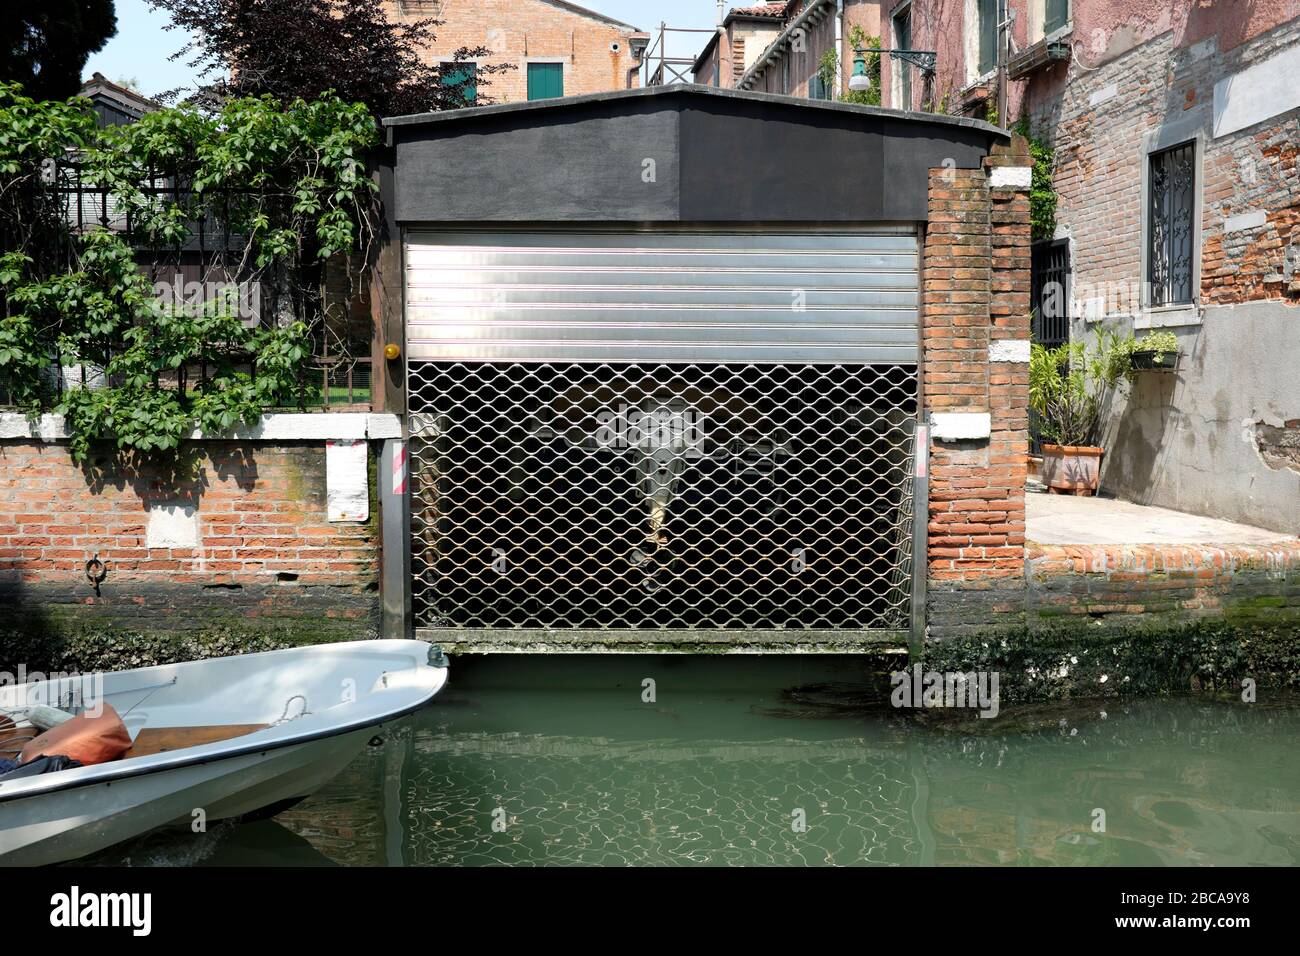 Garaje para barcos en el barrio de Dorsoduro en Venecia Foto de stock